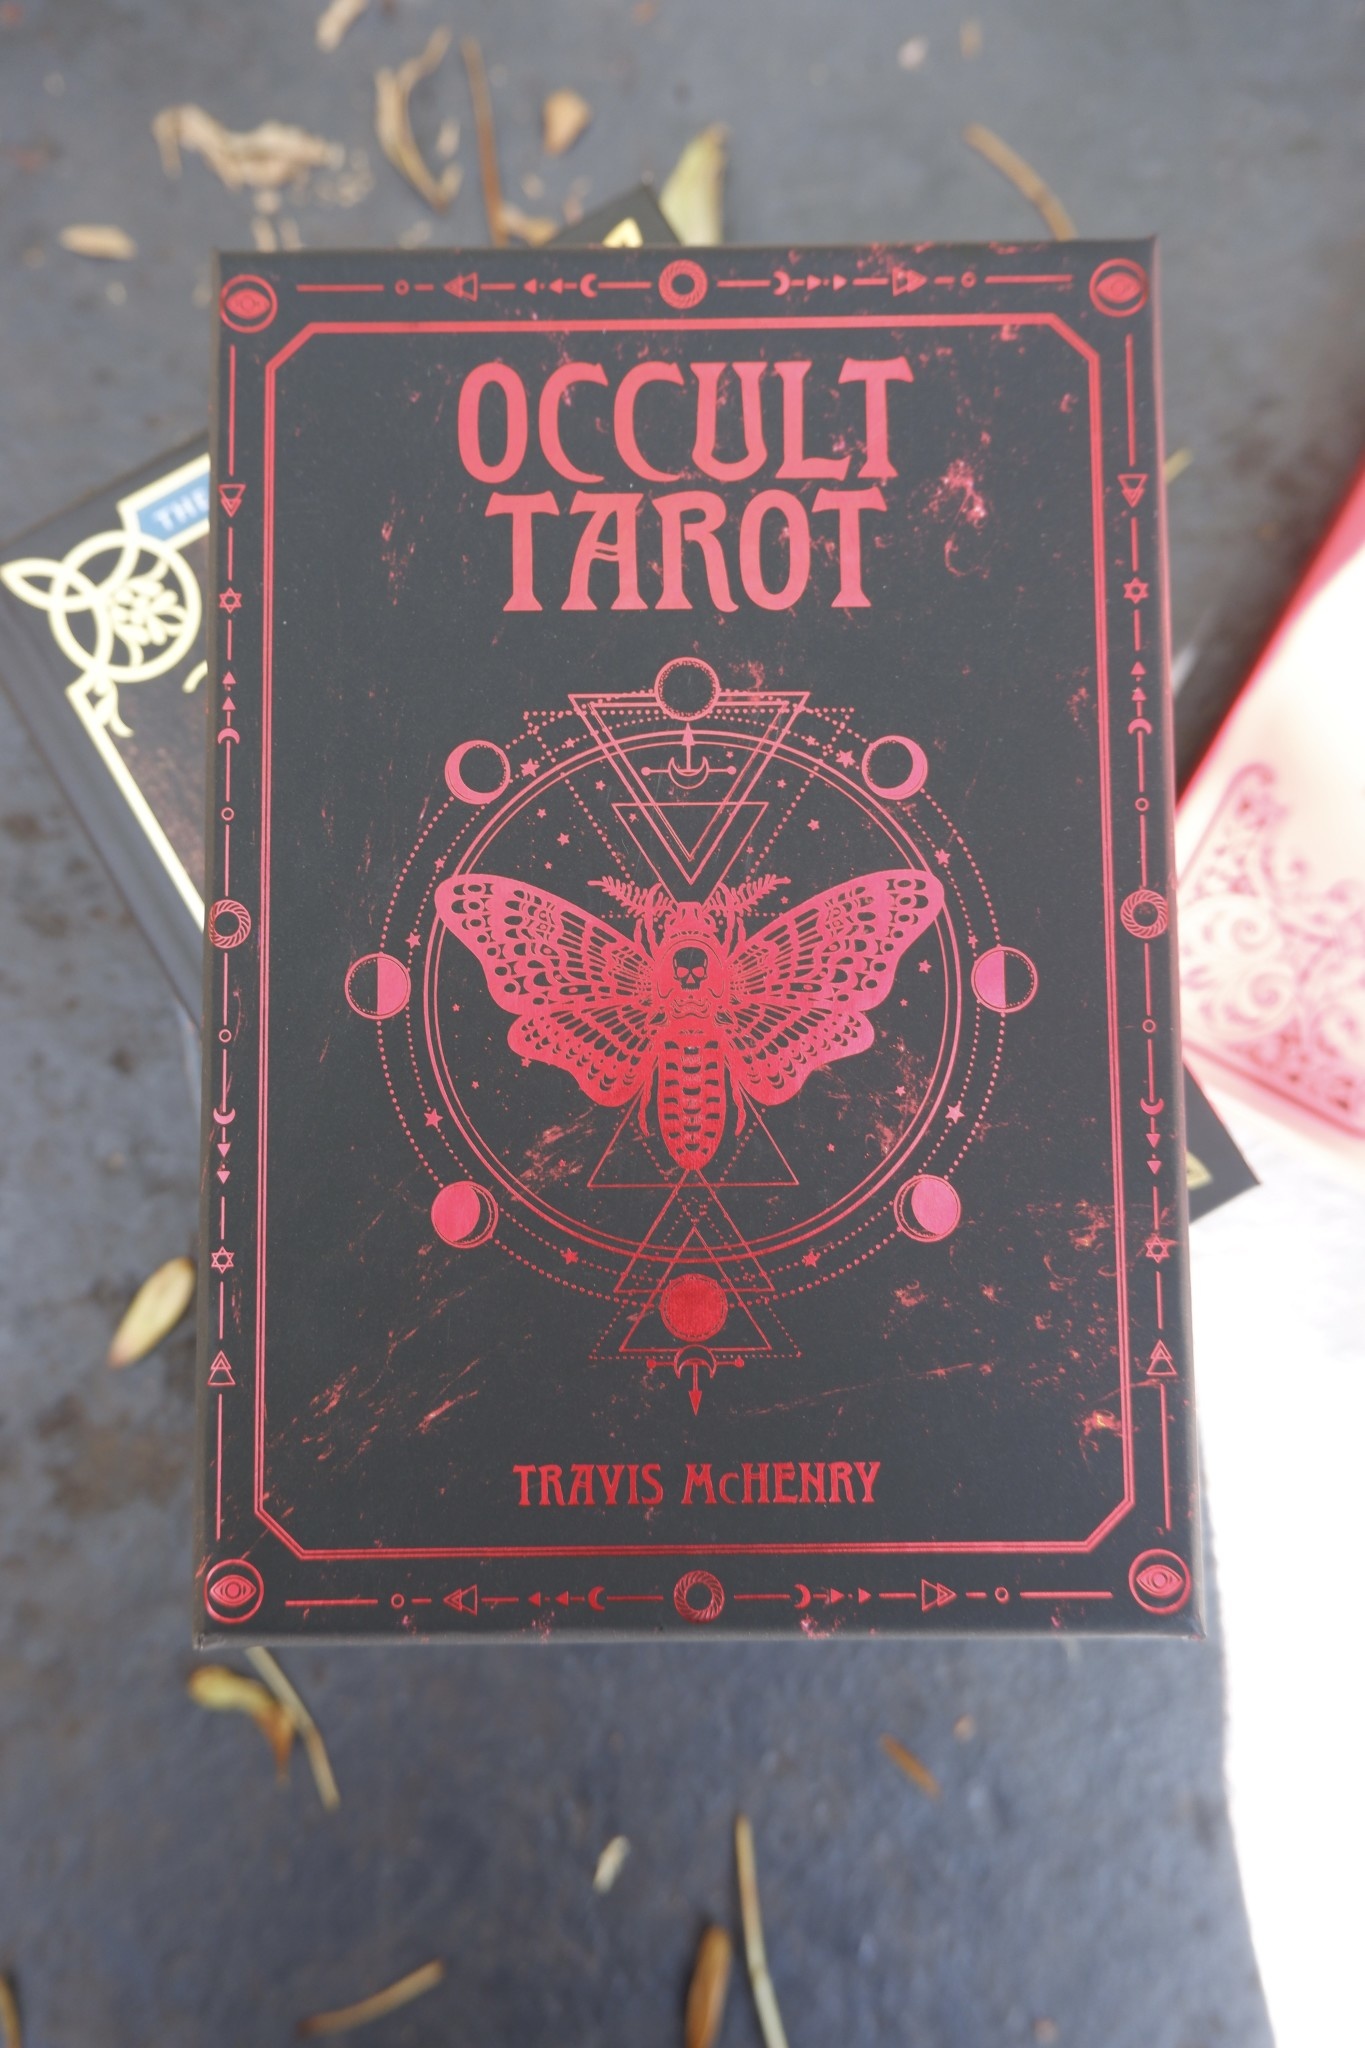 Bộ Bài Occult Tarot (Mystic House Tarot Shop) - Bài Gốc Authentic Chính Hãng 100%